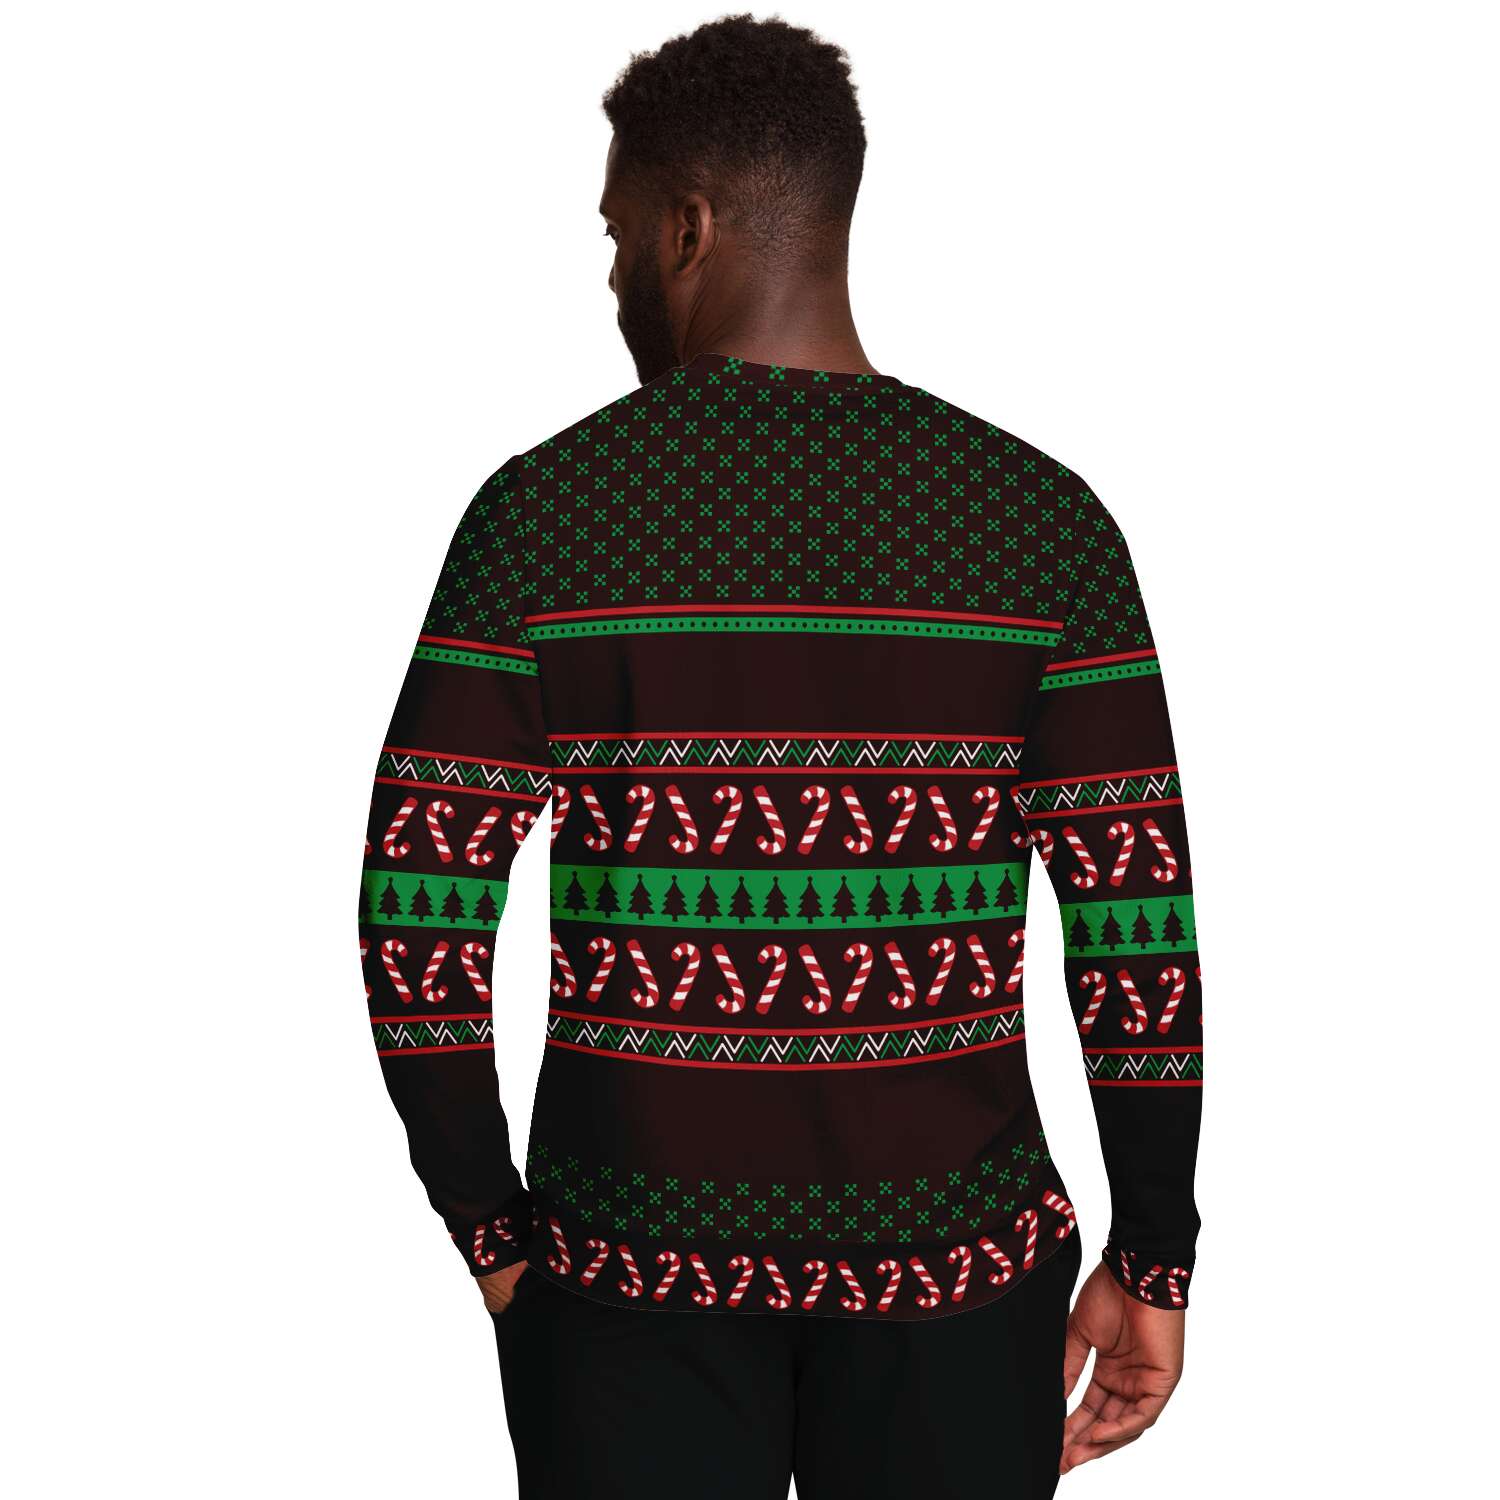 Christmas Tree Rex Sweatshirt | Unisex Ugly Christmas Sweater, Xmas Sweater, Holiday Sweater, Festive Sweater, Funny Sweater, Funny Party Shirt